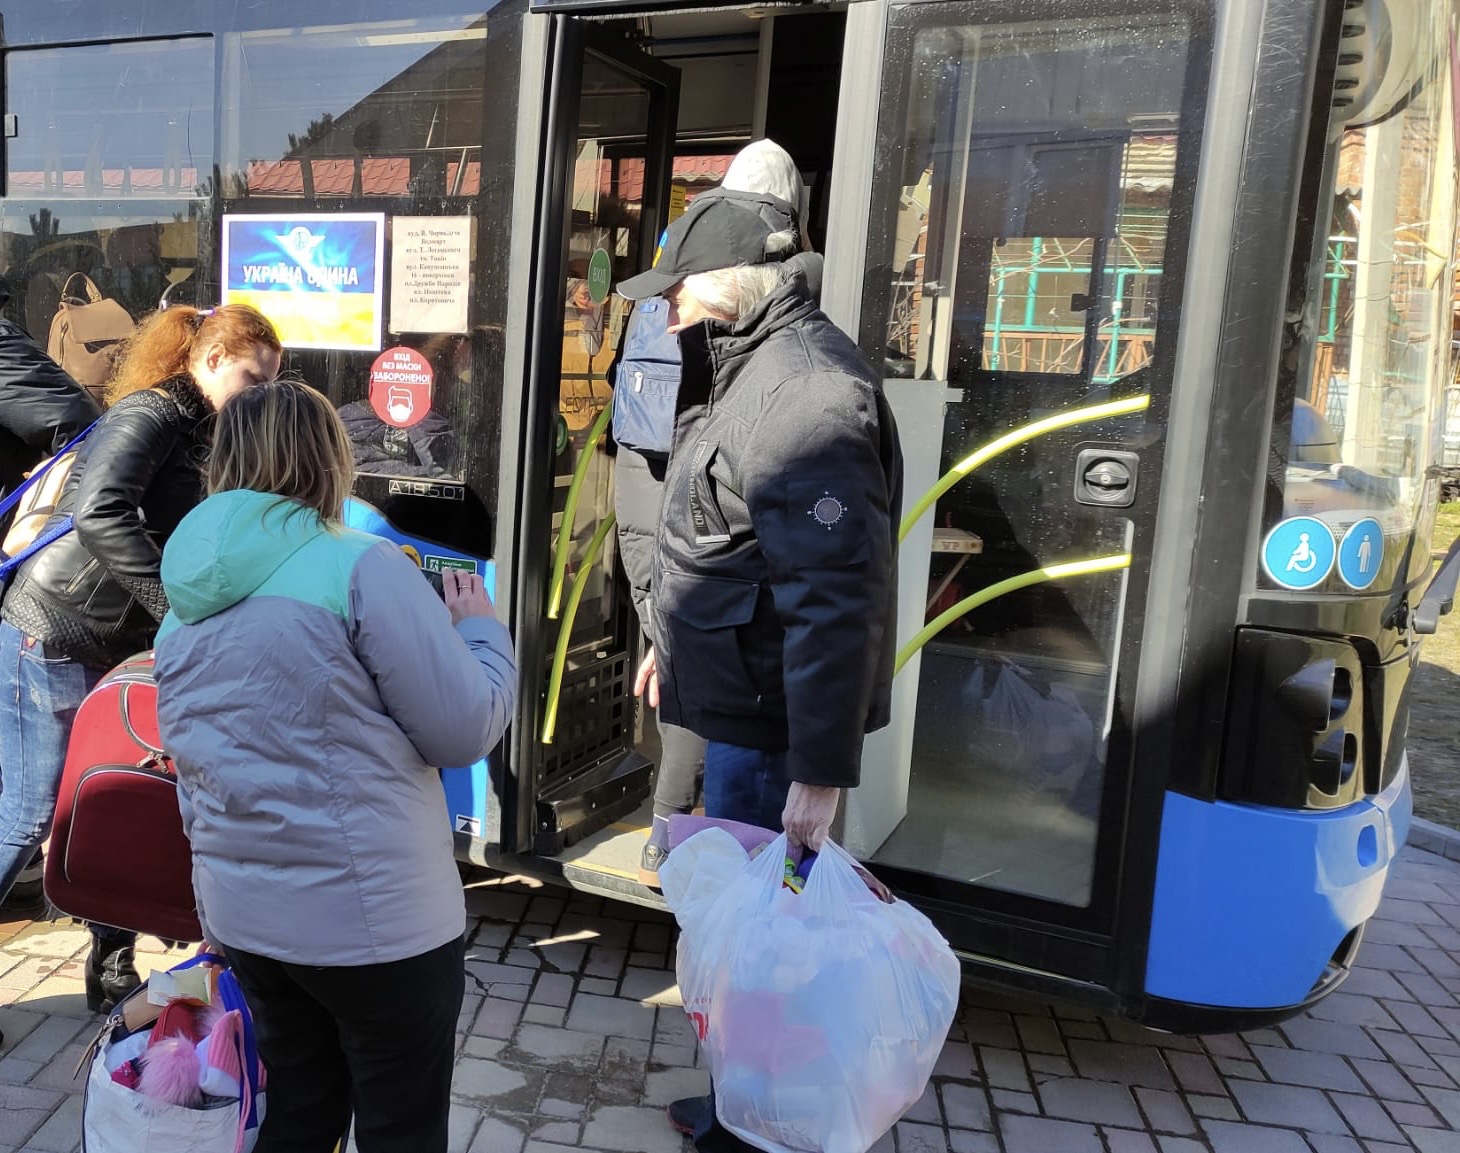 烏克蘭當地牧師幫忙媽媽及小孩搭巴士逃難